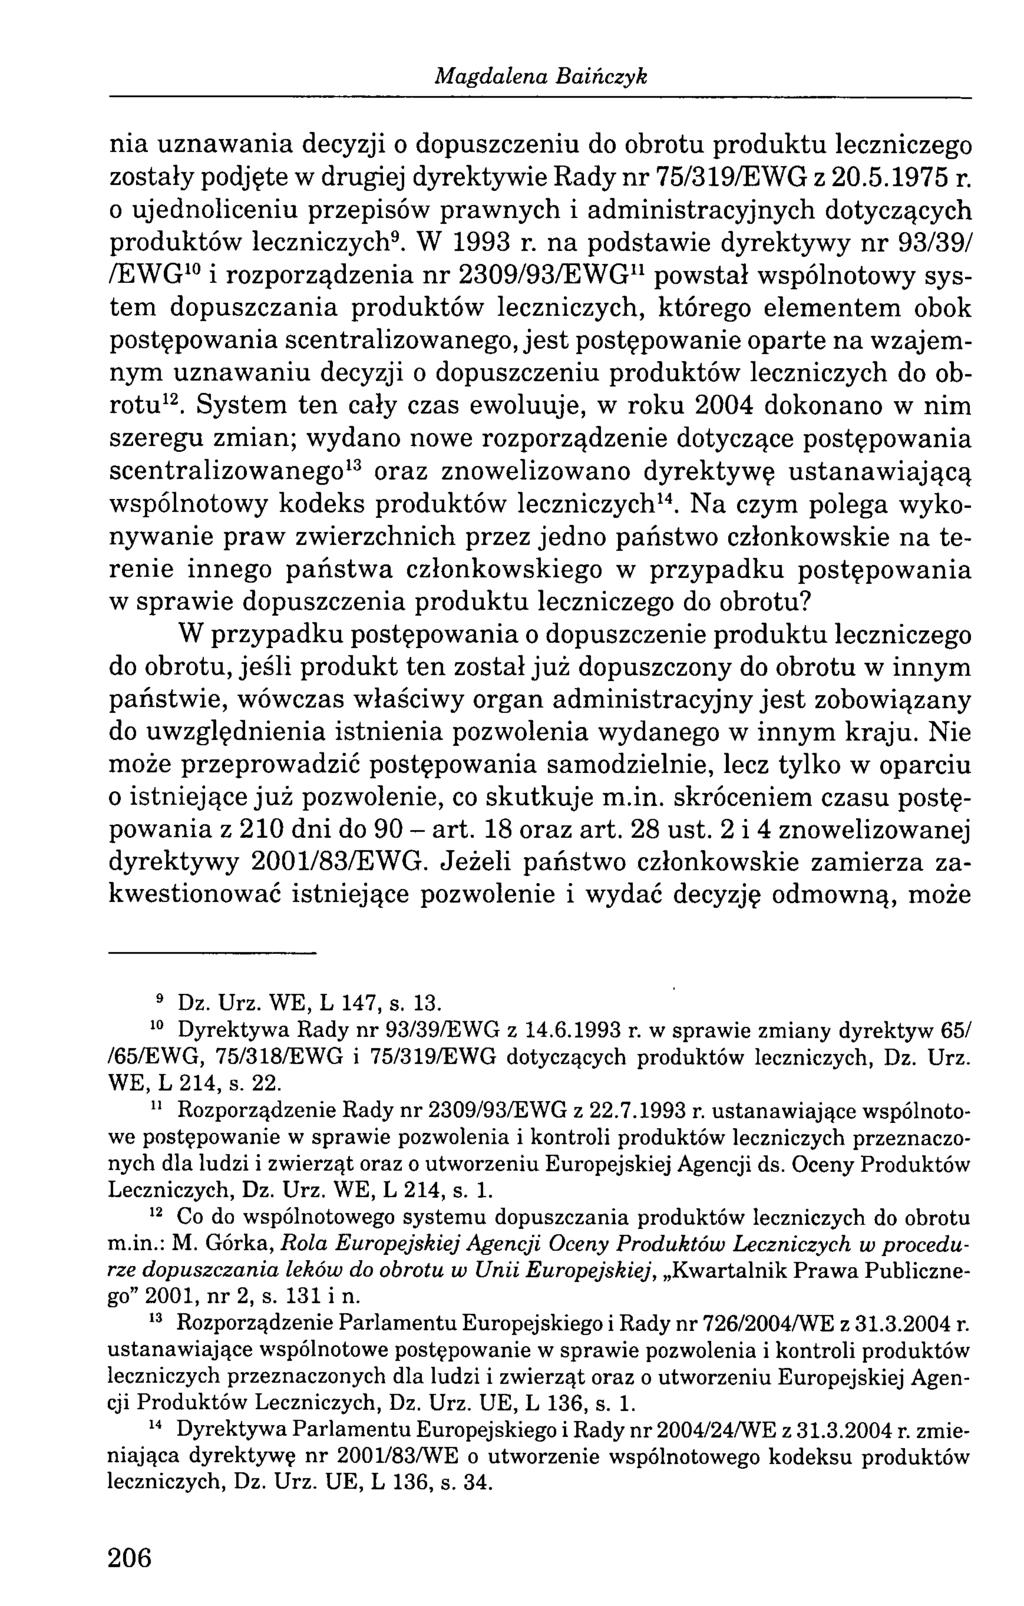 Magdalena Baińczyk nia uznawania decyzji o dopuszczeniu do obrotu produktu leczniczego zostały podjęte w drugiej dyrektywie Rady nr 75/319/EWG z 20.5.1975 r.